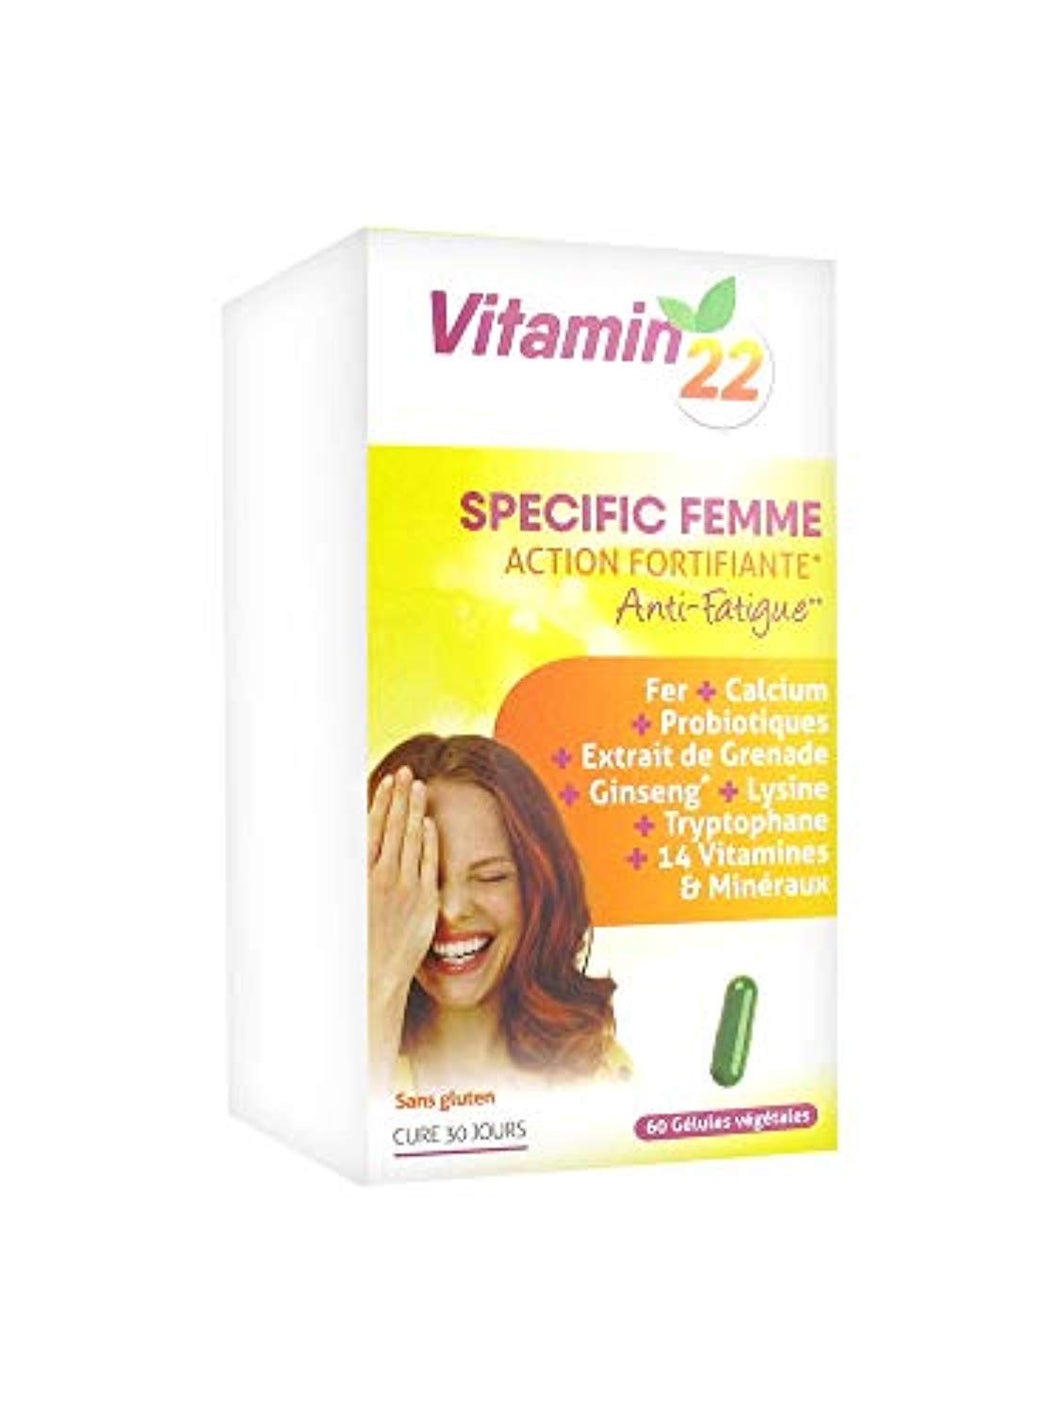 Ineldea - Vitamin'22 specific femme - 60 gélules - 1 mois pour faire le plein d'énergie